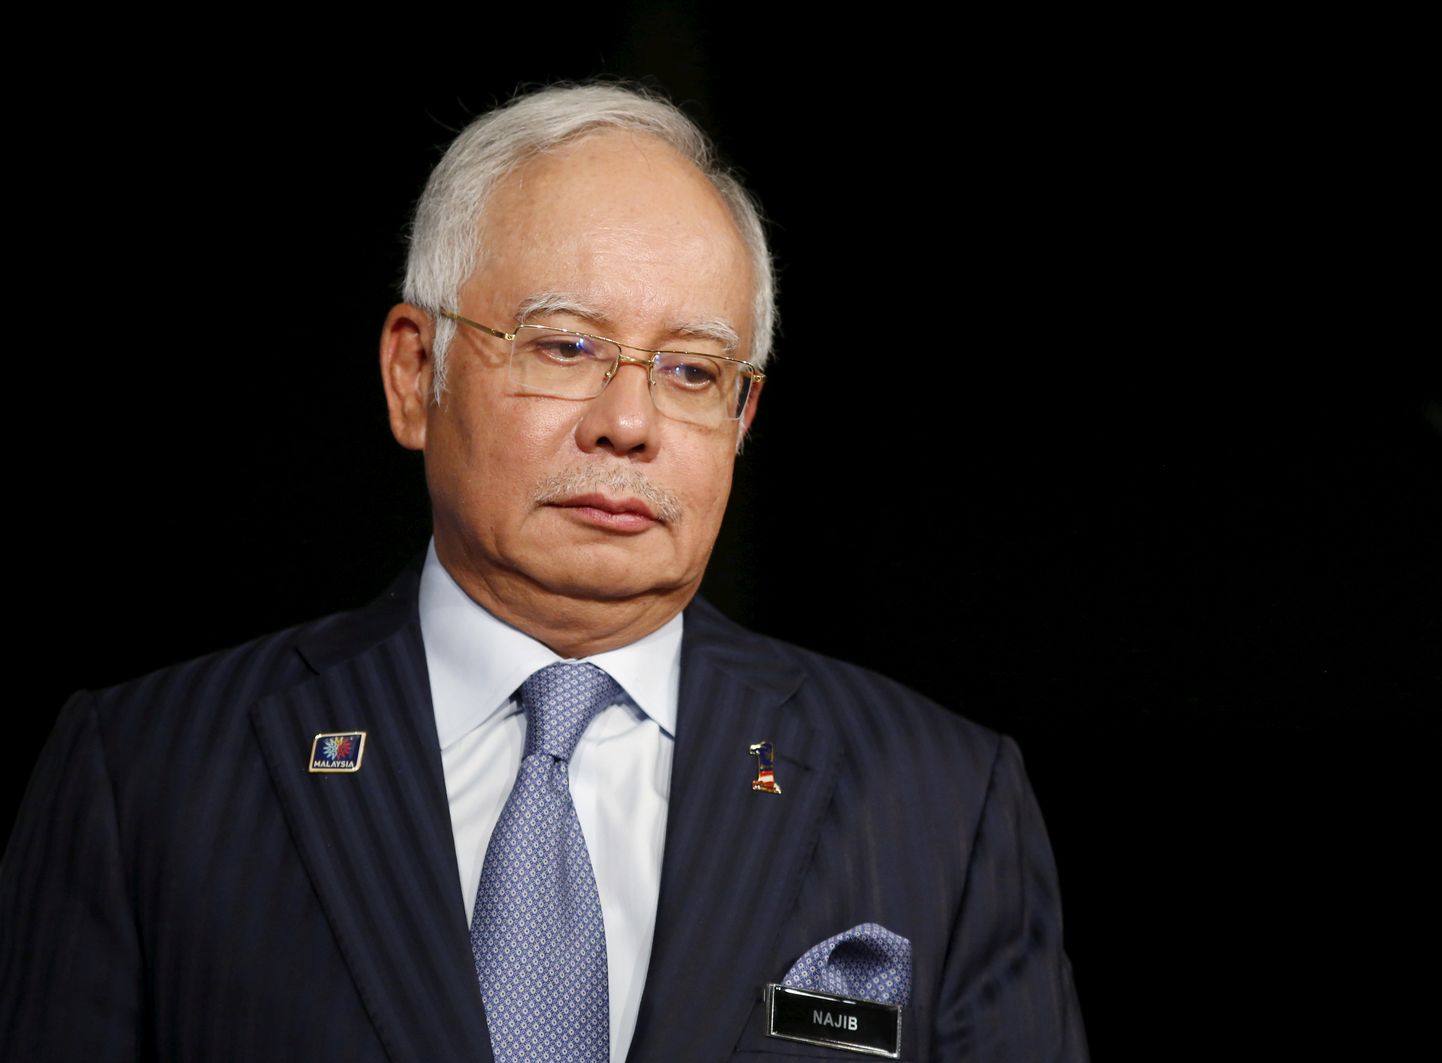 Malaisia endist preministrit Najib Razaki süüdistatakse riiklikust investeerimisfondist miljardite dollarite varastamises.